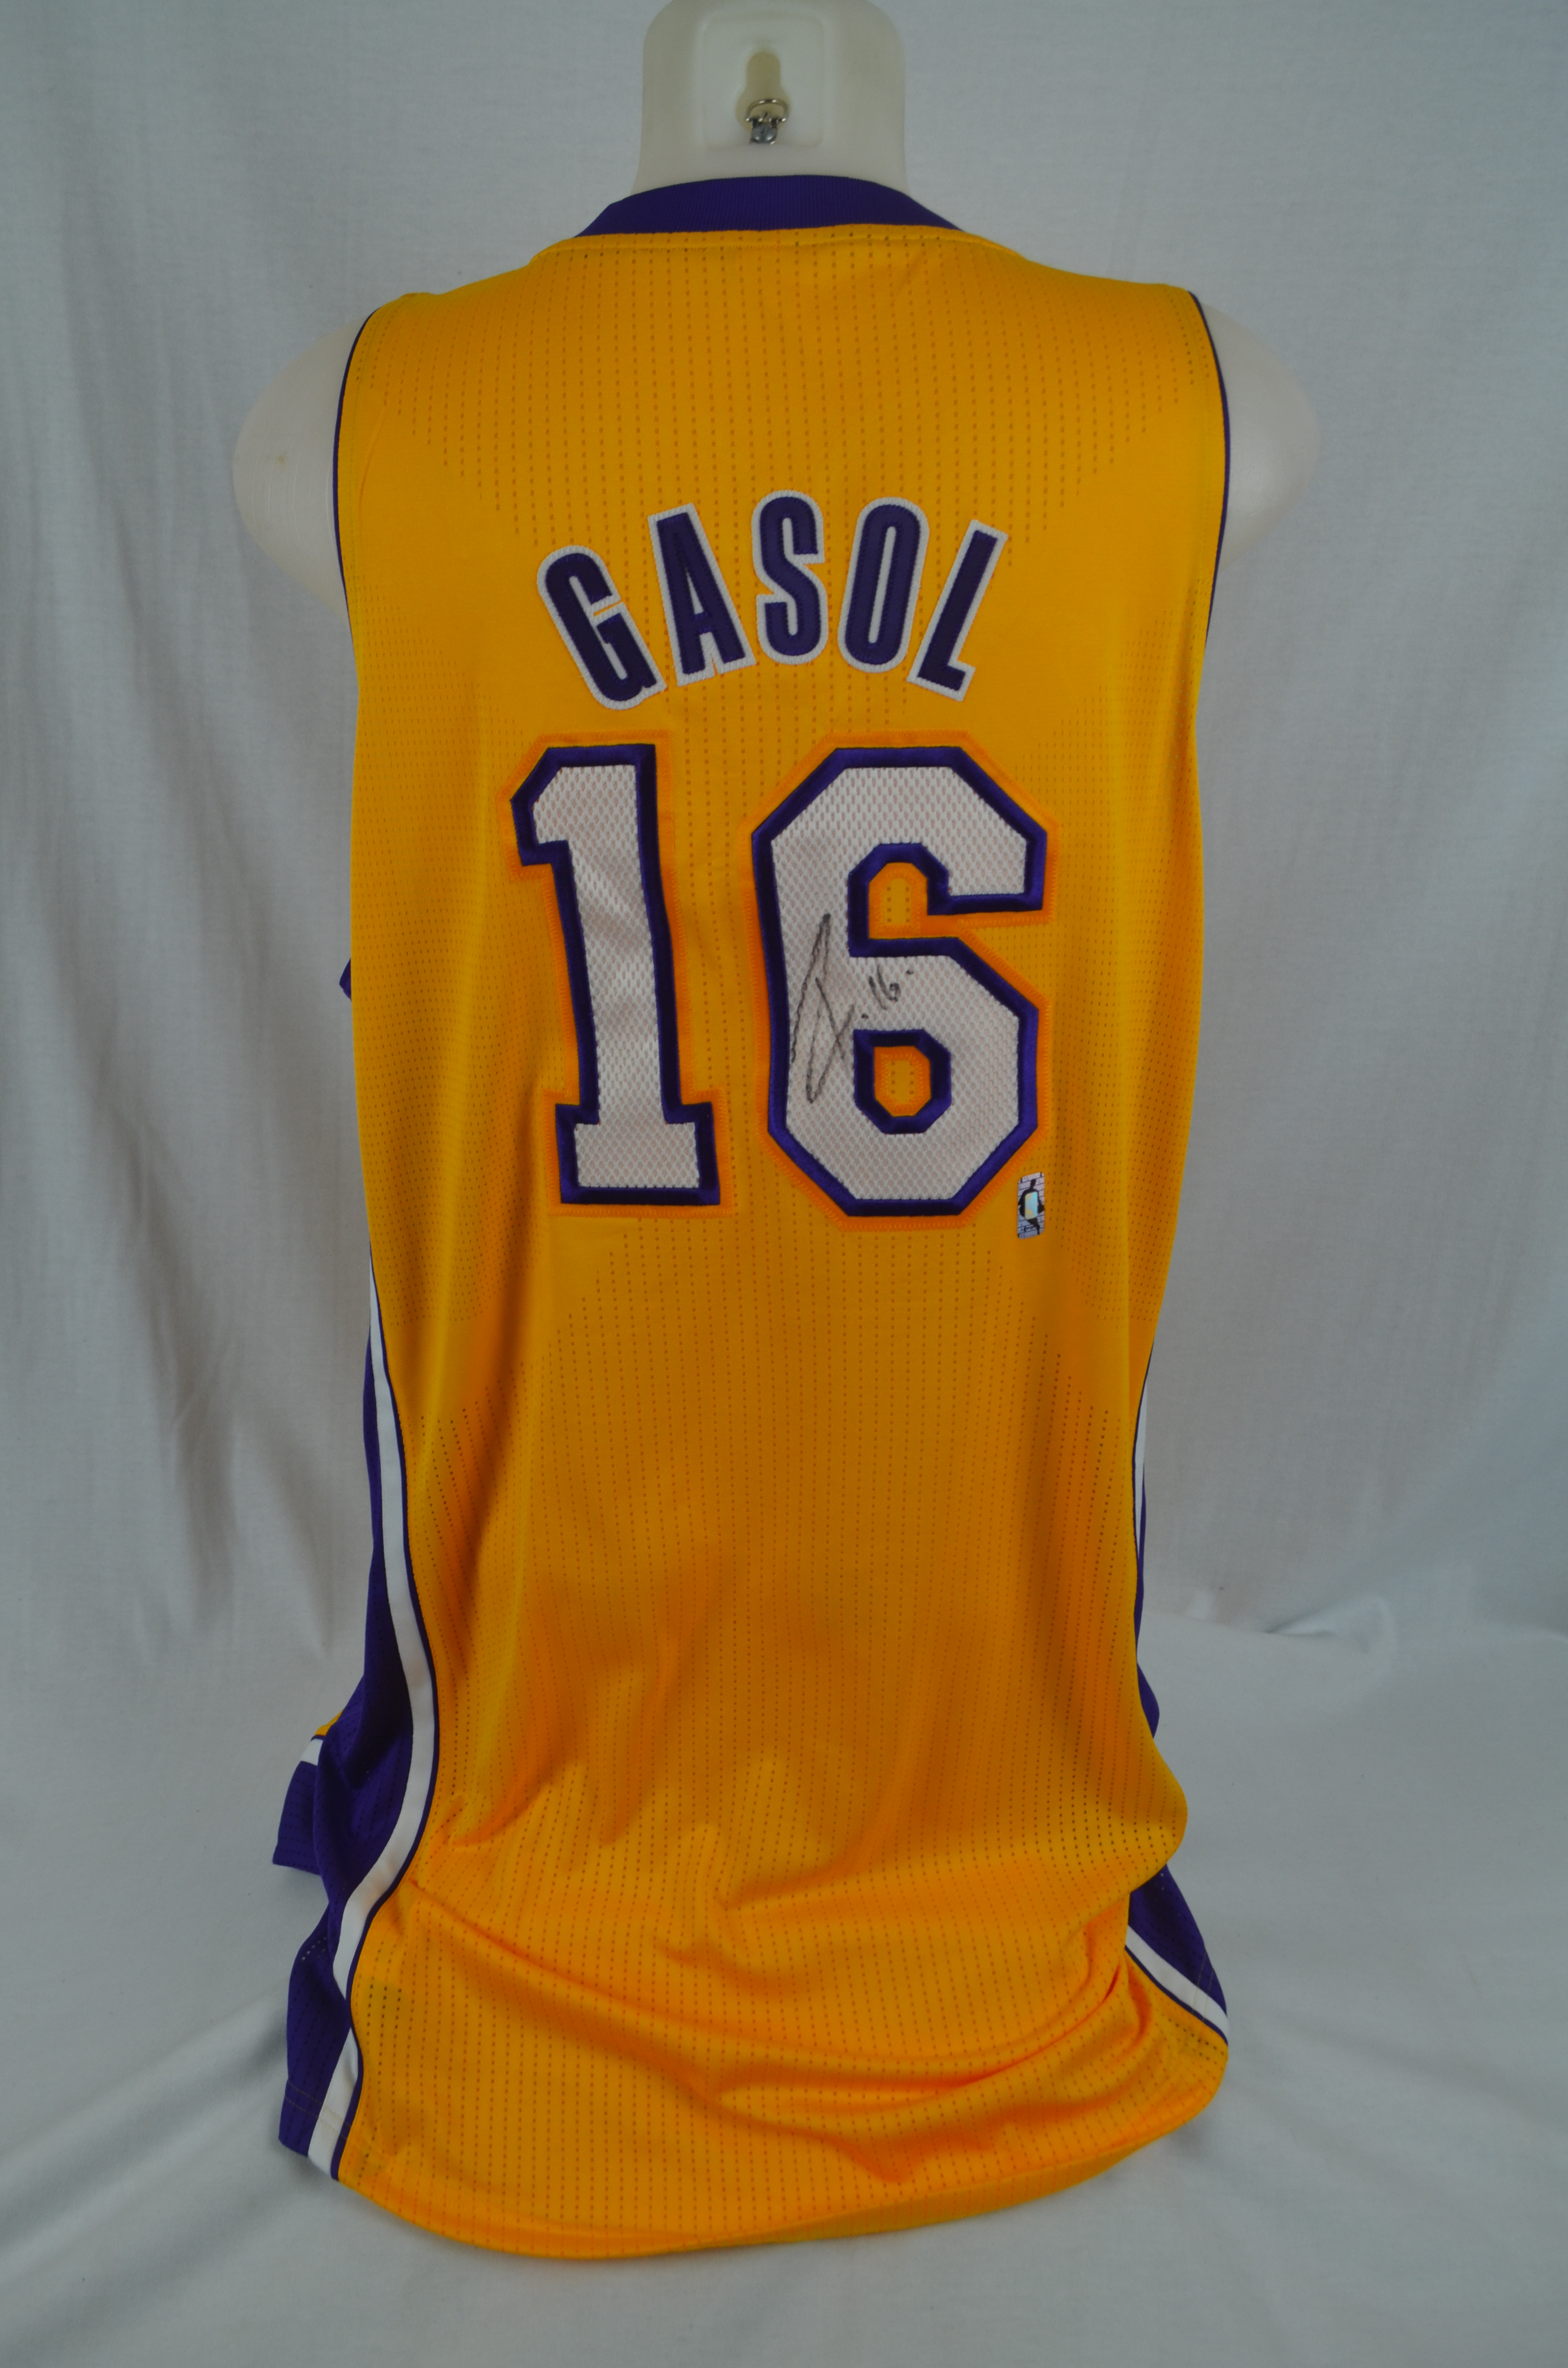 Pau Gasol Lakers jersey, team autographed value